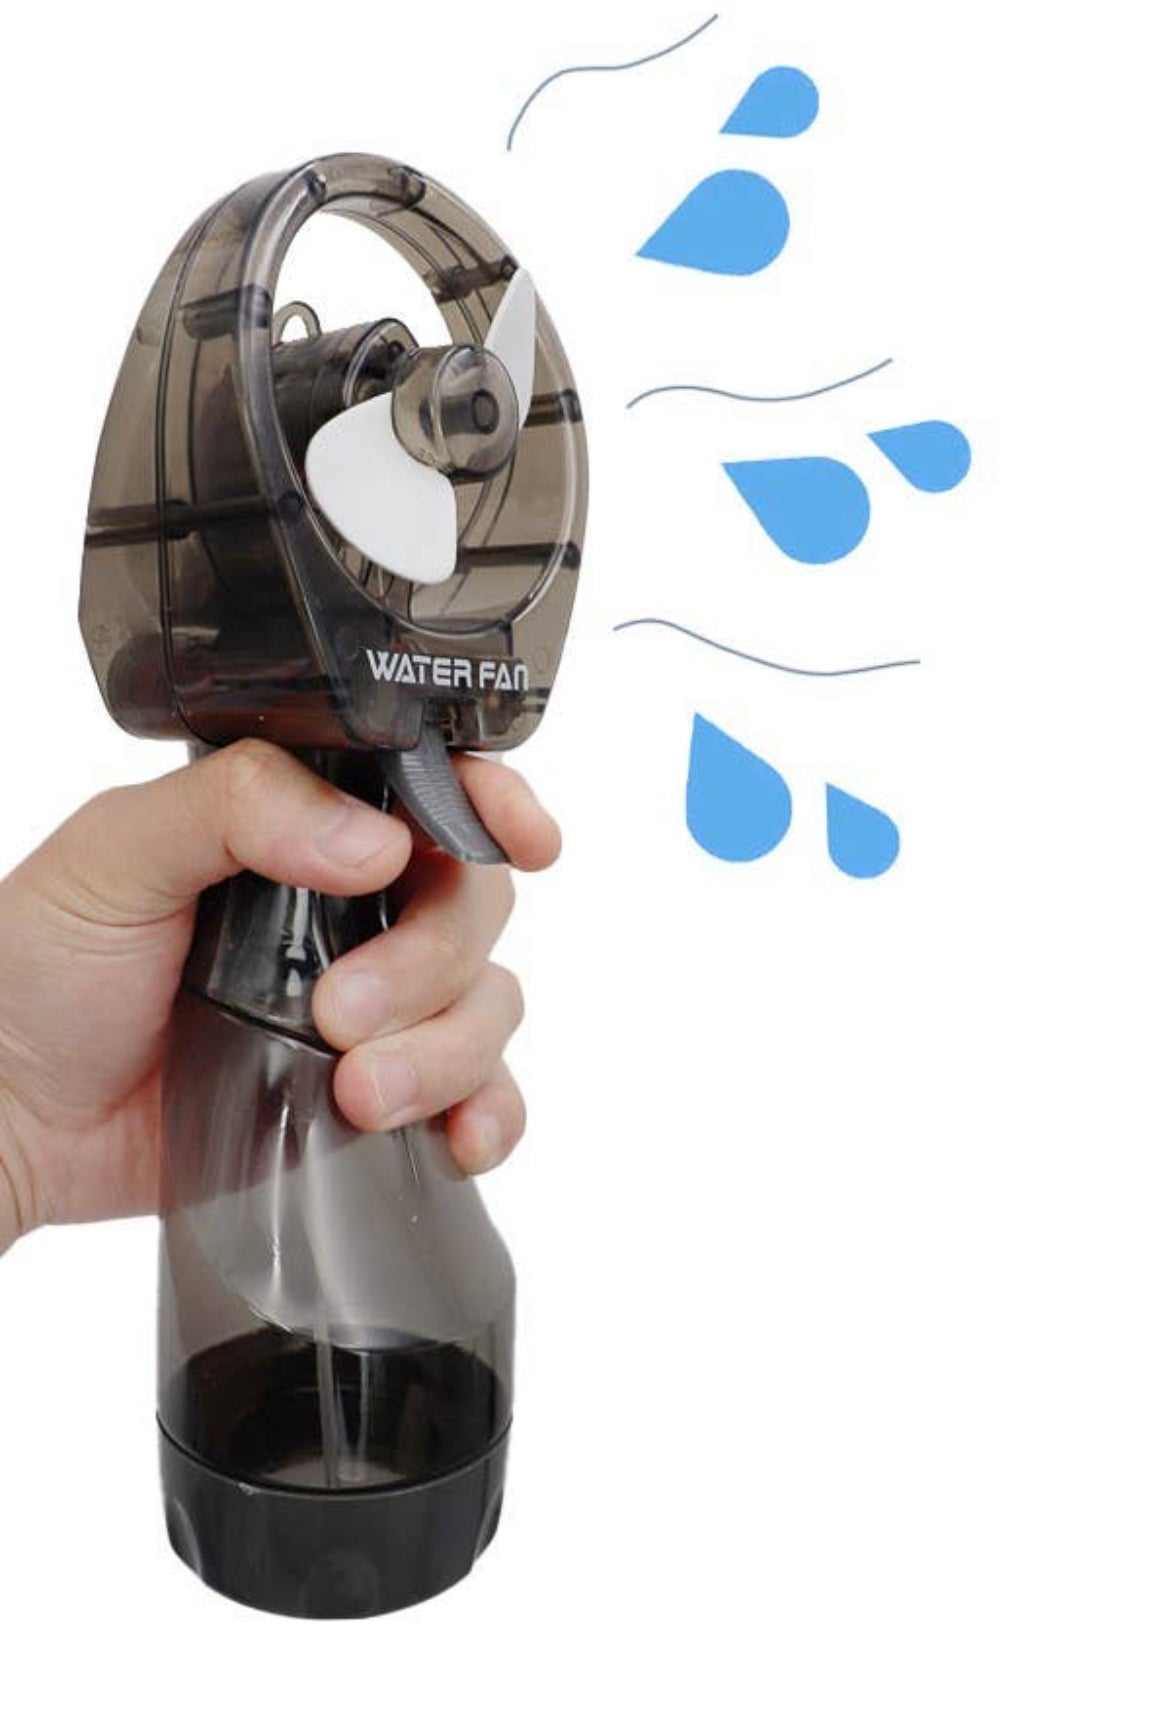 Water Fan